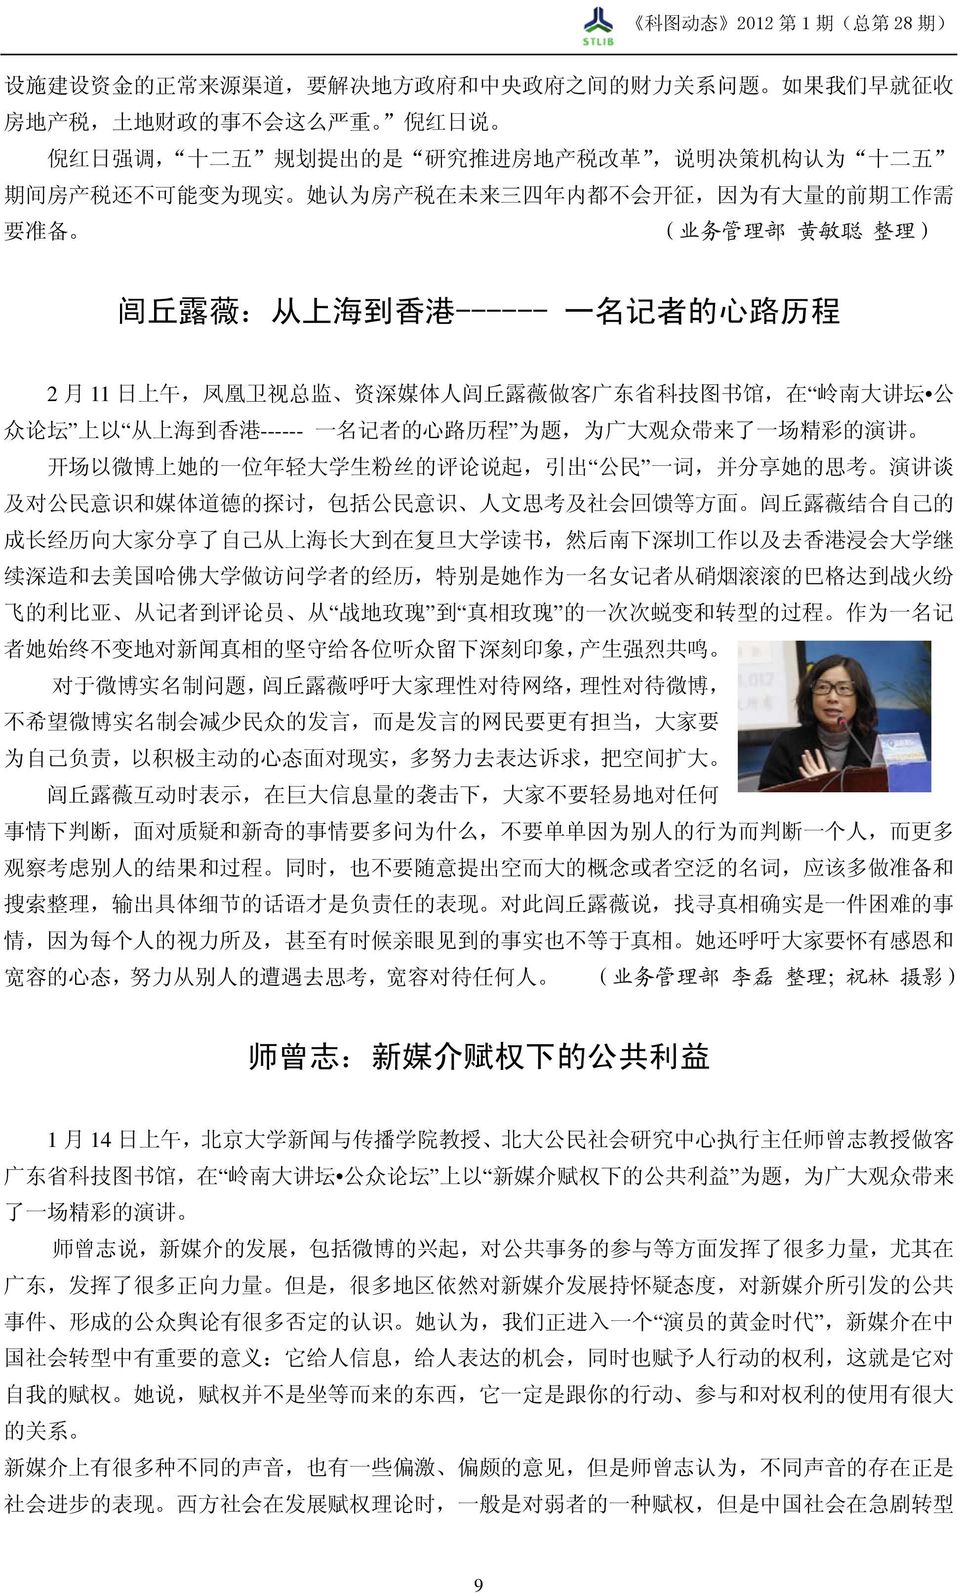 露 薇 做 客 广 东 省 科 技 图 书 馆, 在 岭 南 大 讲 坛 公 众 论 坛 上 以 从 上 海 到 香 港 ------ 一 名 记 者 的 心 路 历 程 为 题, 为 广 大 观 众 带 来 了 一 场 精 彩 的 演 讲 开 场 以 微 博 上 她 的 一 位 年 轻 大 学 生 粉 丝 的 评 论 说 起, 引 出 公 民 一 词, 并 分 享 她 的 思 考 演 讲 谈